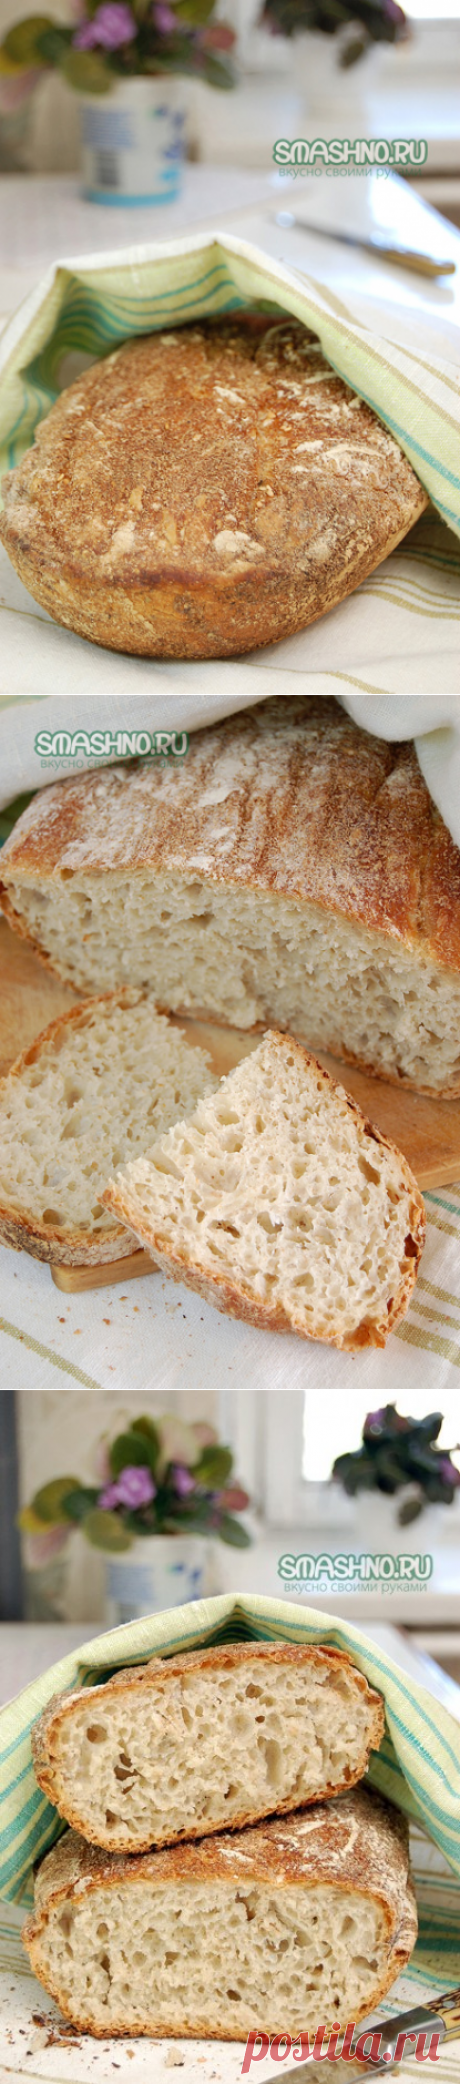 Теперь я могу испечь хлеб дома. Очень простой рецепт хлеба. - пошаговый рецепт с фото